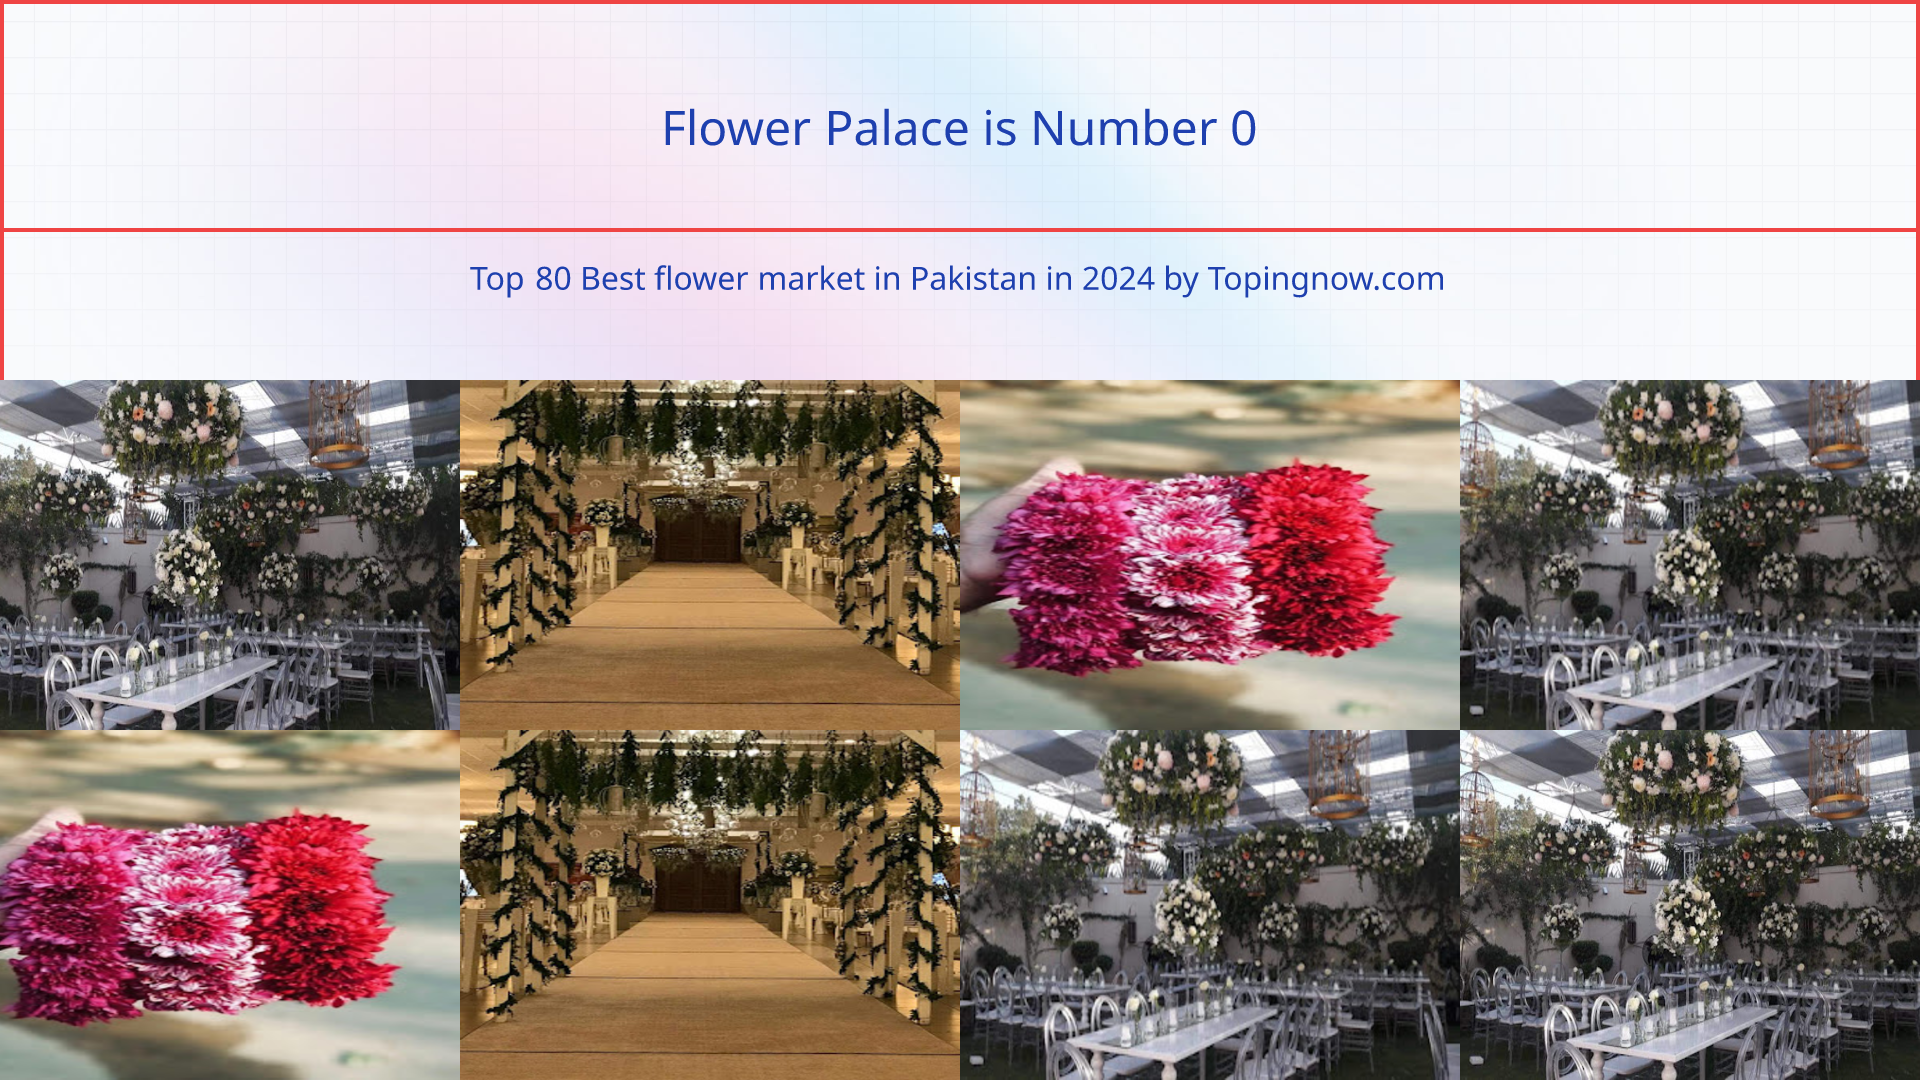 Flower Palace: Top 80 Best flower market in Pakistan in 2024